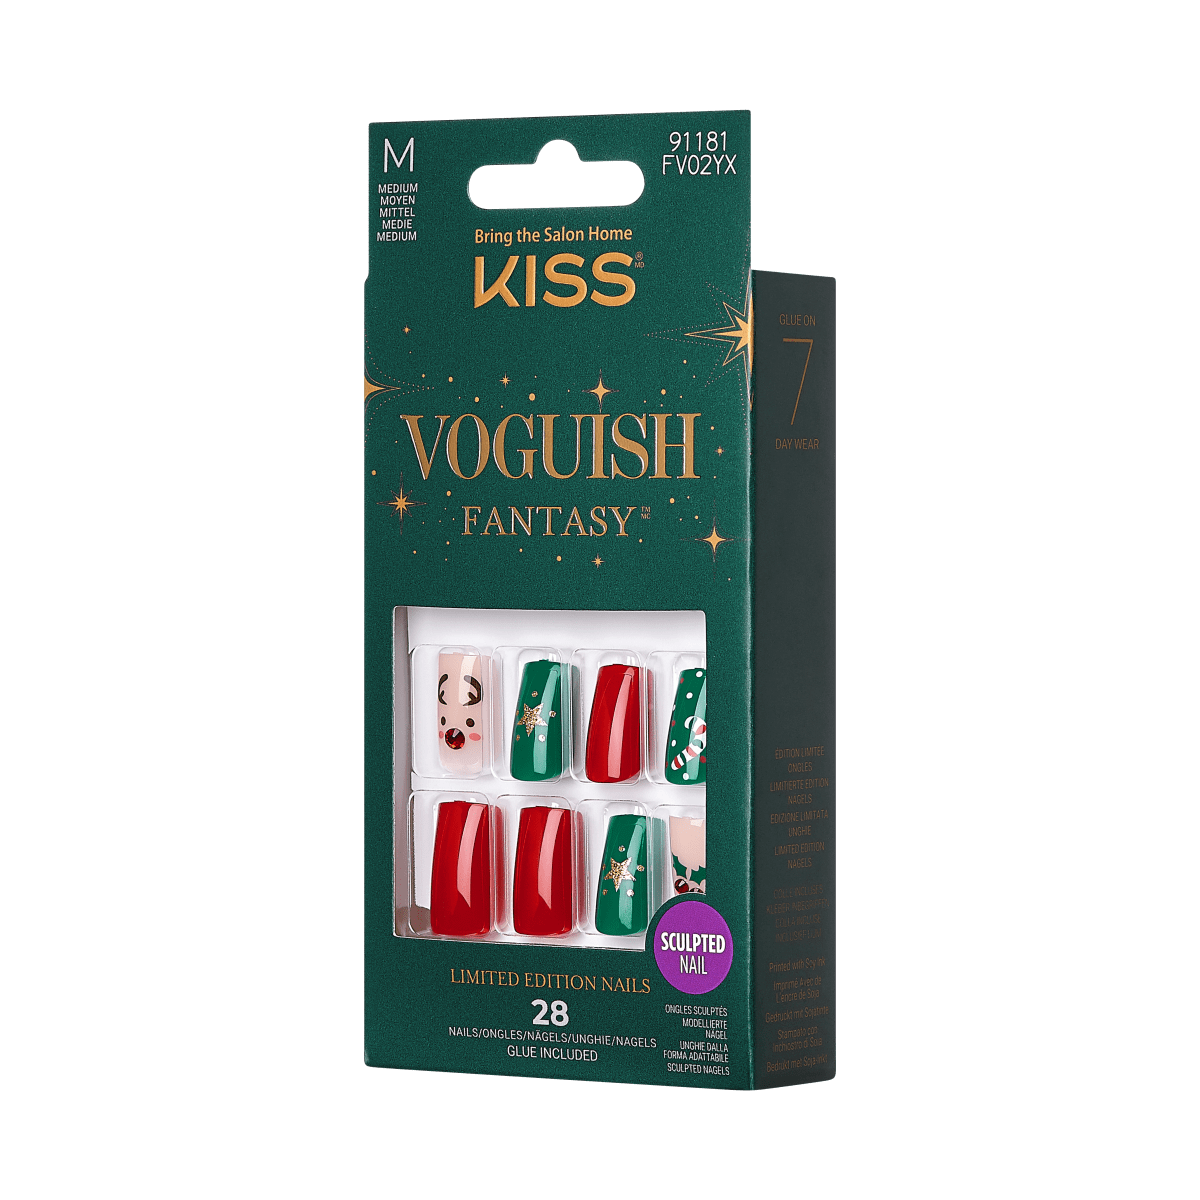 KISS Voguish Fantasy Holiday Nails - Stockings